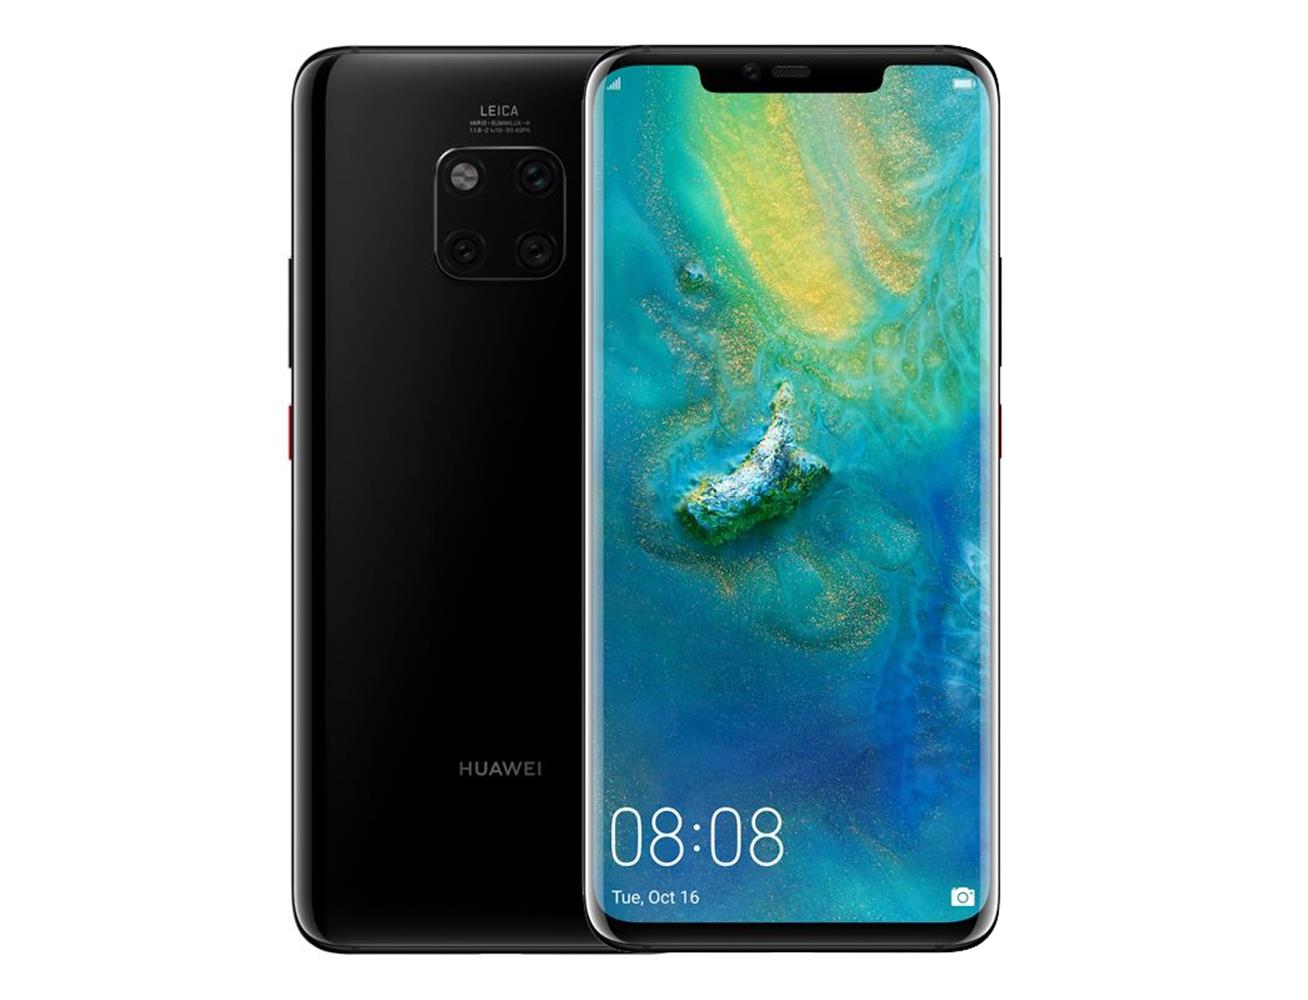 Huawei mate 20 pro купить